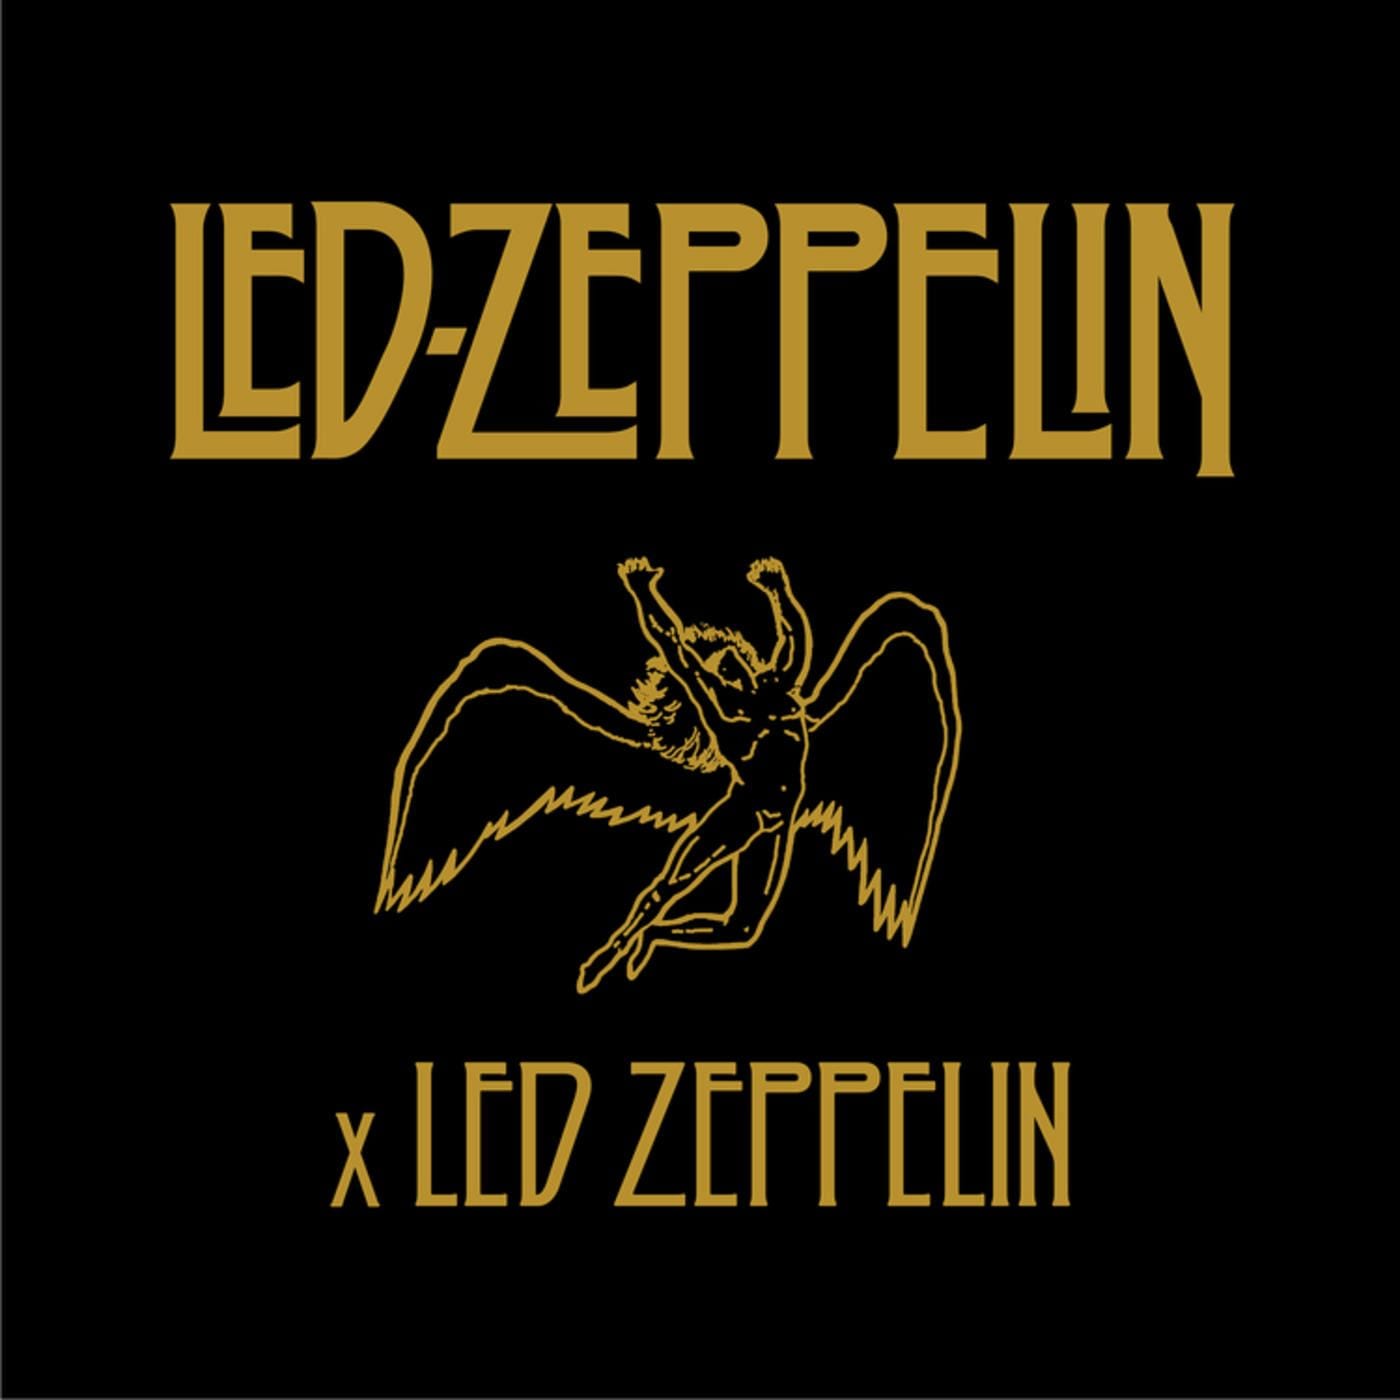 Led Zeppelin, recopilatorio por su 50 aniversario: «Led Zeppelin X» –  